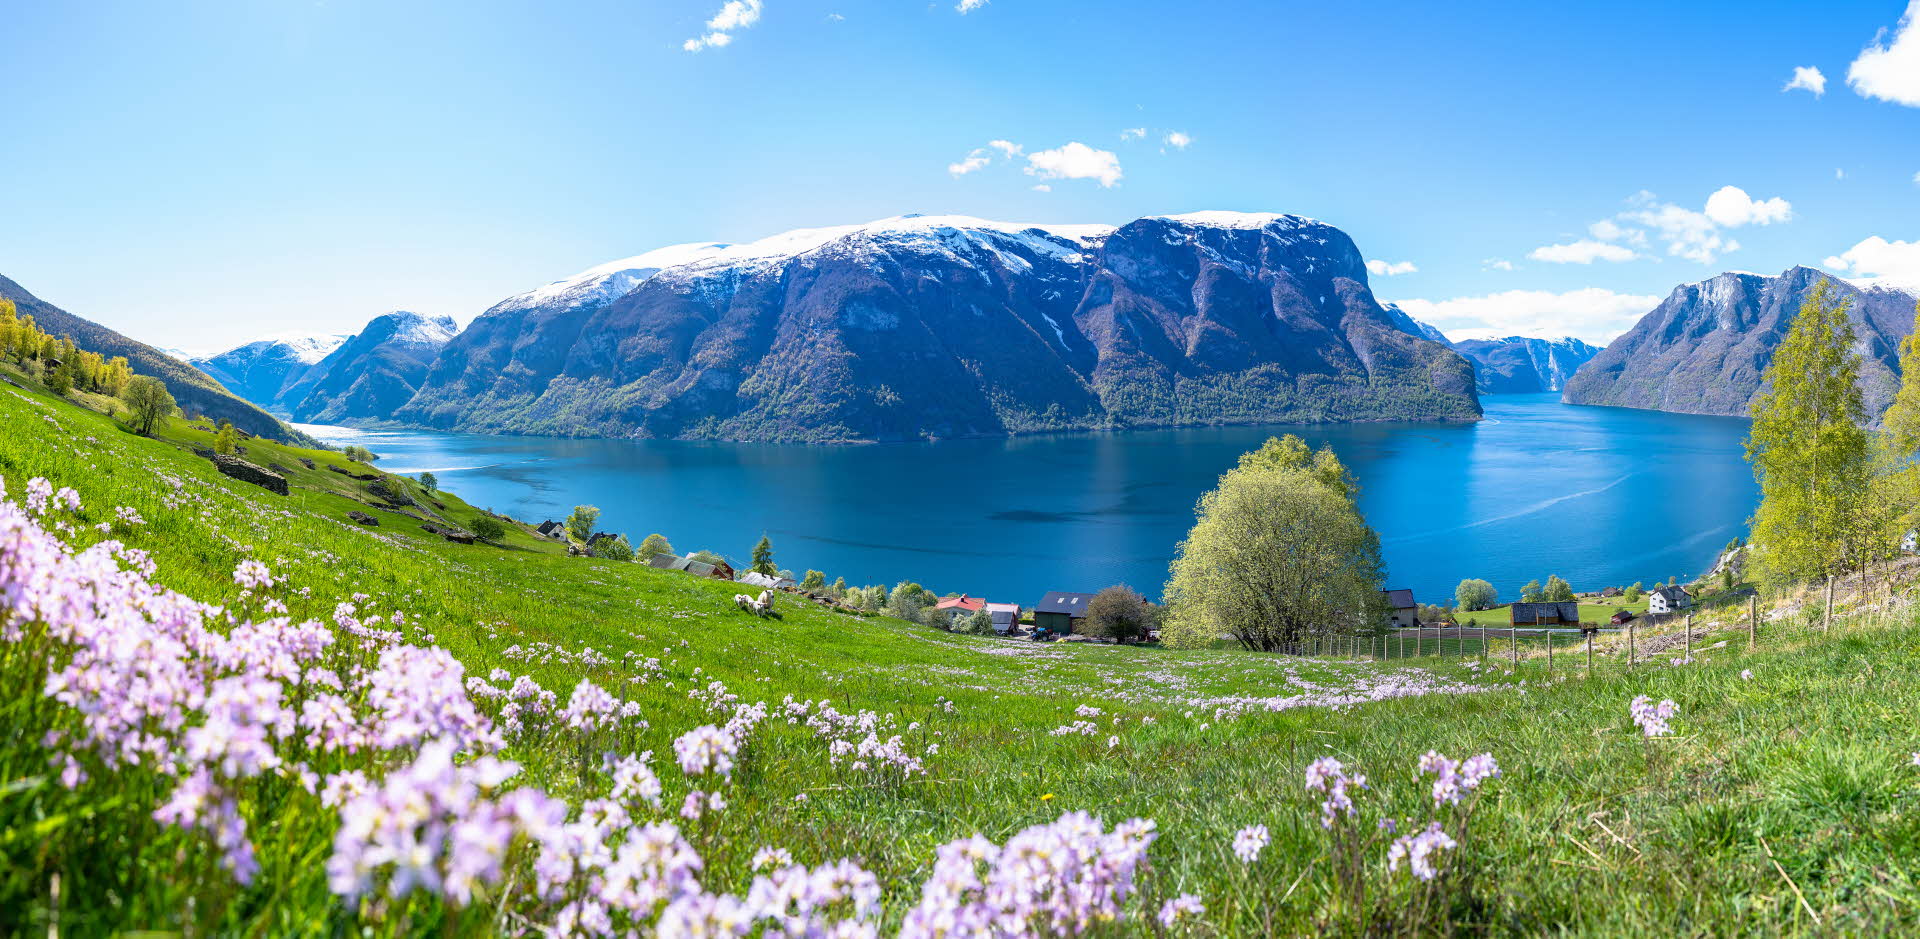 这幅全景图展现了艾于兰开满鲜花的绿色草地和羊群的全景，可以看到被联合国教科文组织列入名录的挪威艾于兰峡湾。